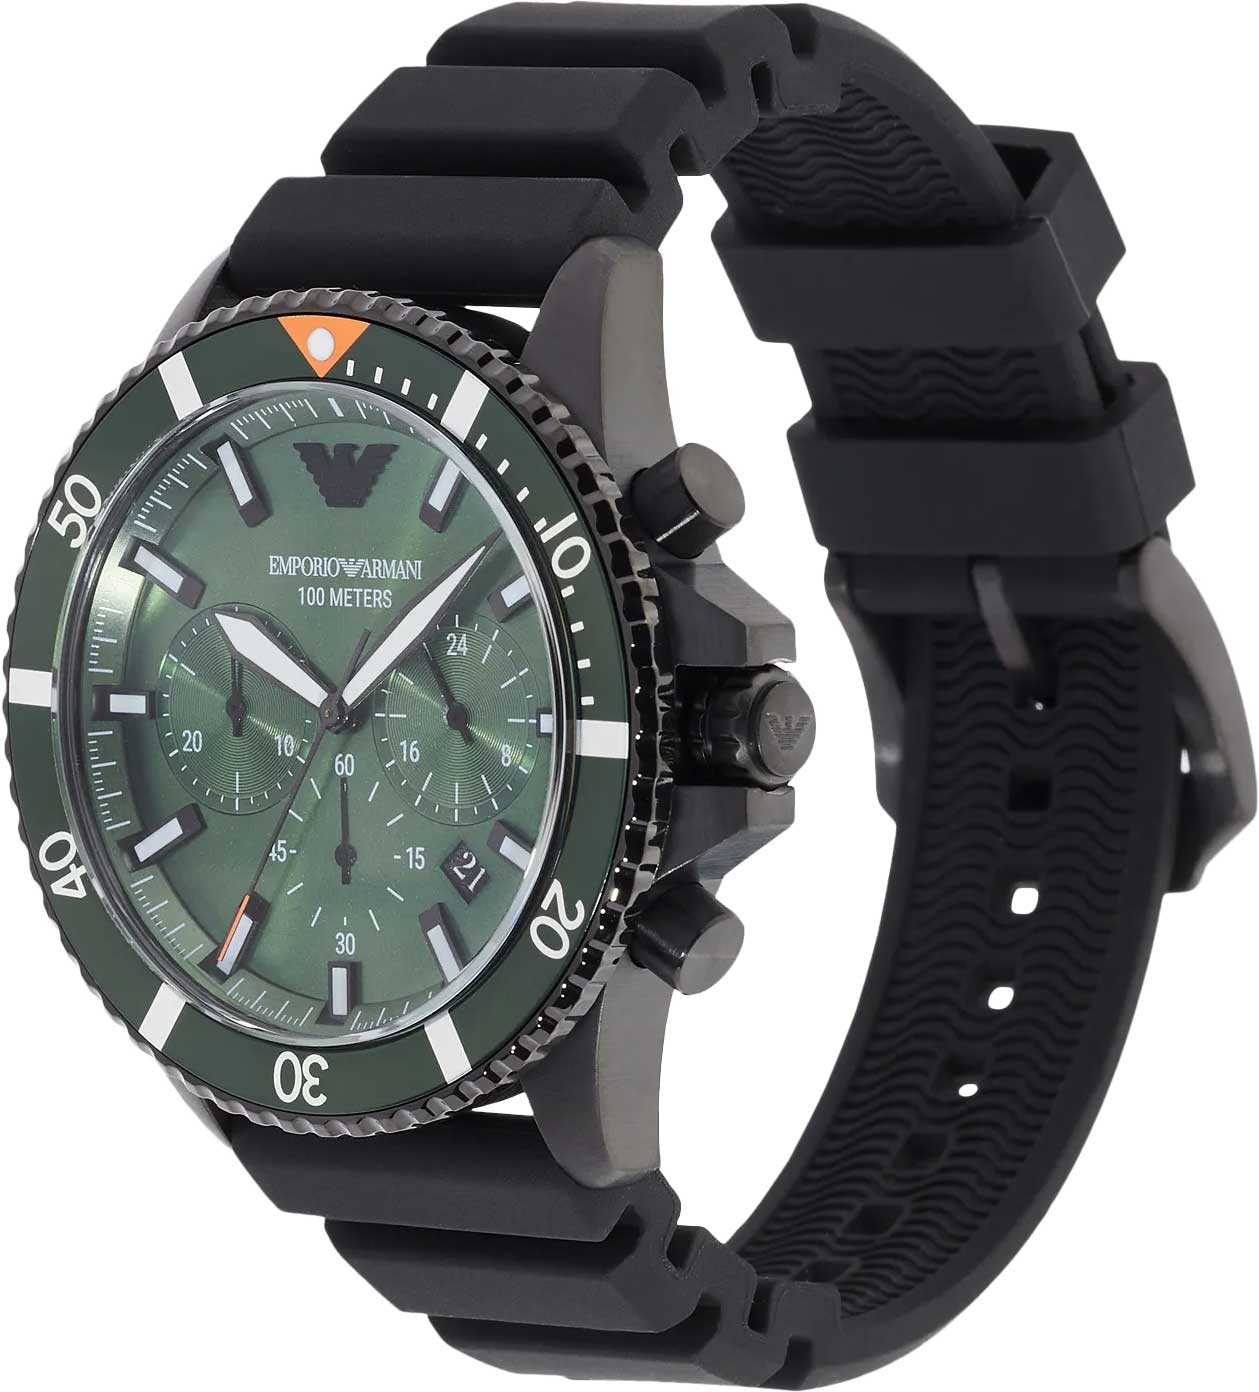 Мужские AR11463 цена, купить часы и фото, характеристики Emporio описание - Armani Diver в 3-15, интернет-магазине